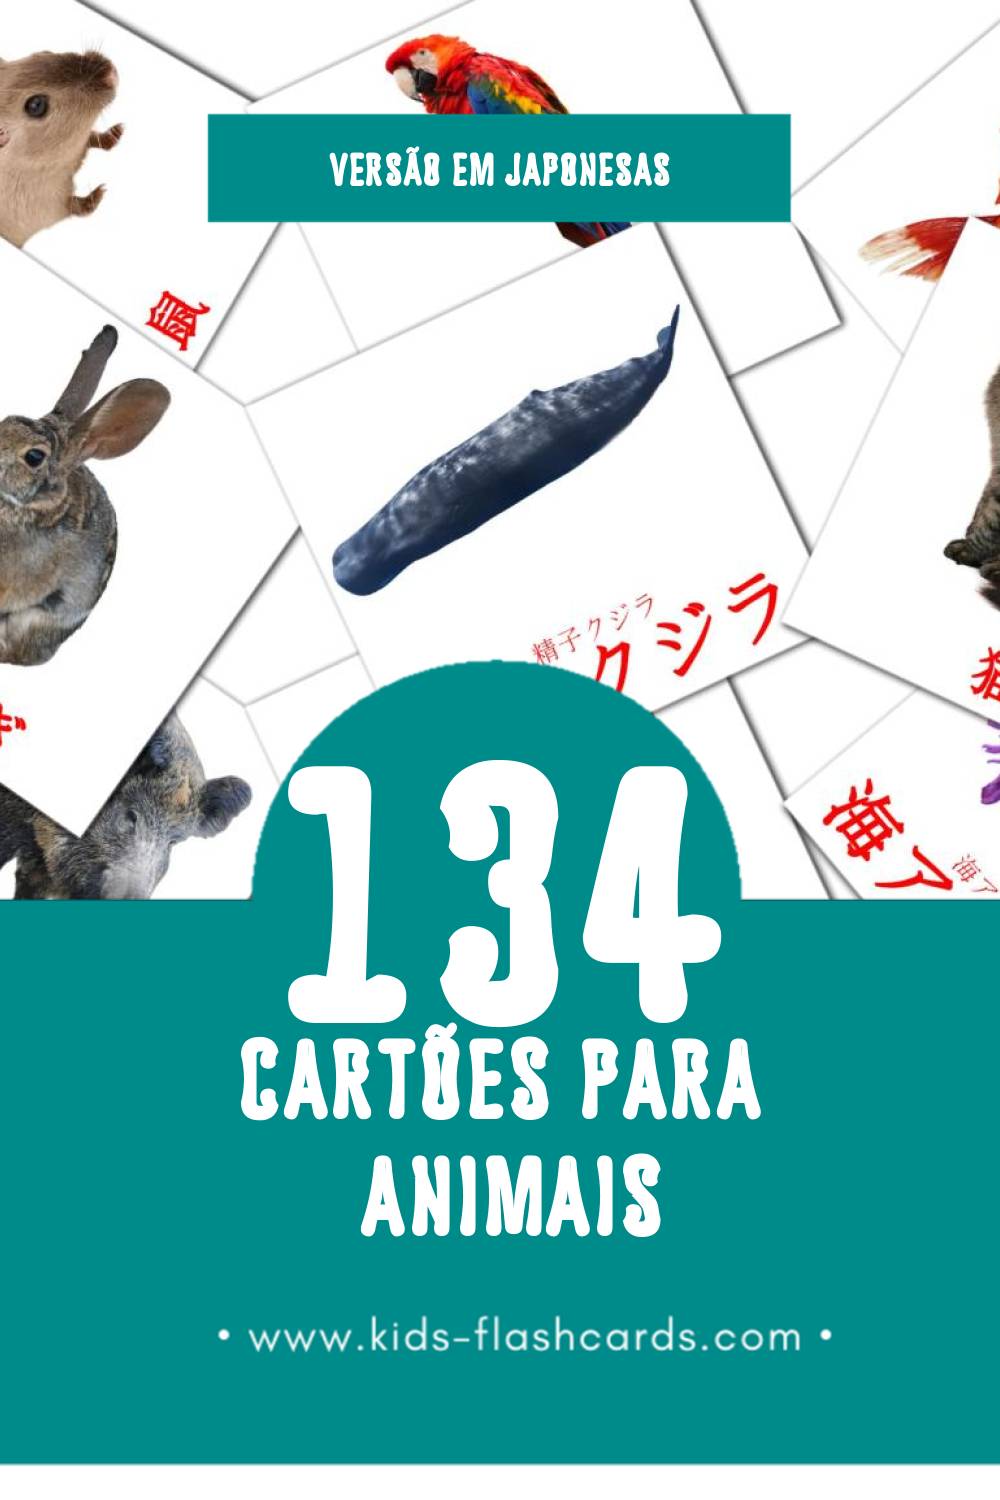 Flashcards de 動物 - どうぶつ Visuais para Toddlers (134 cartões em Japonesas)